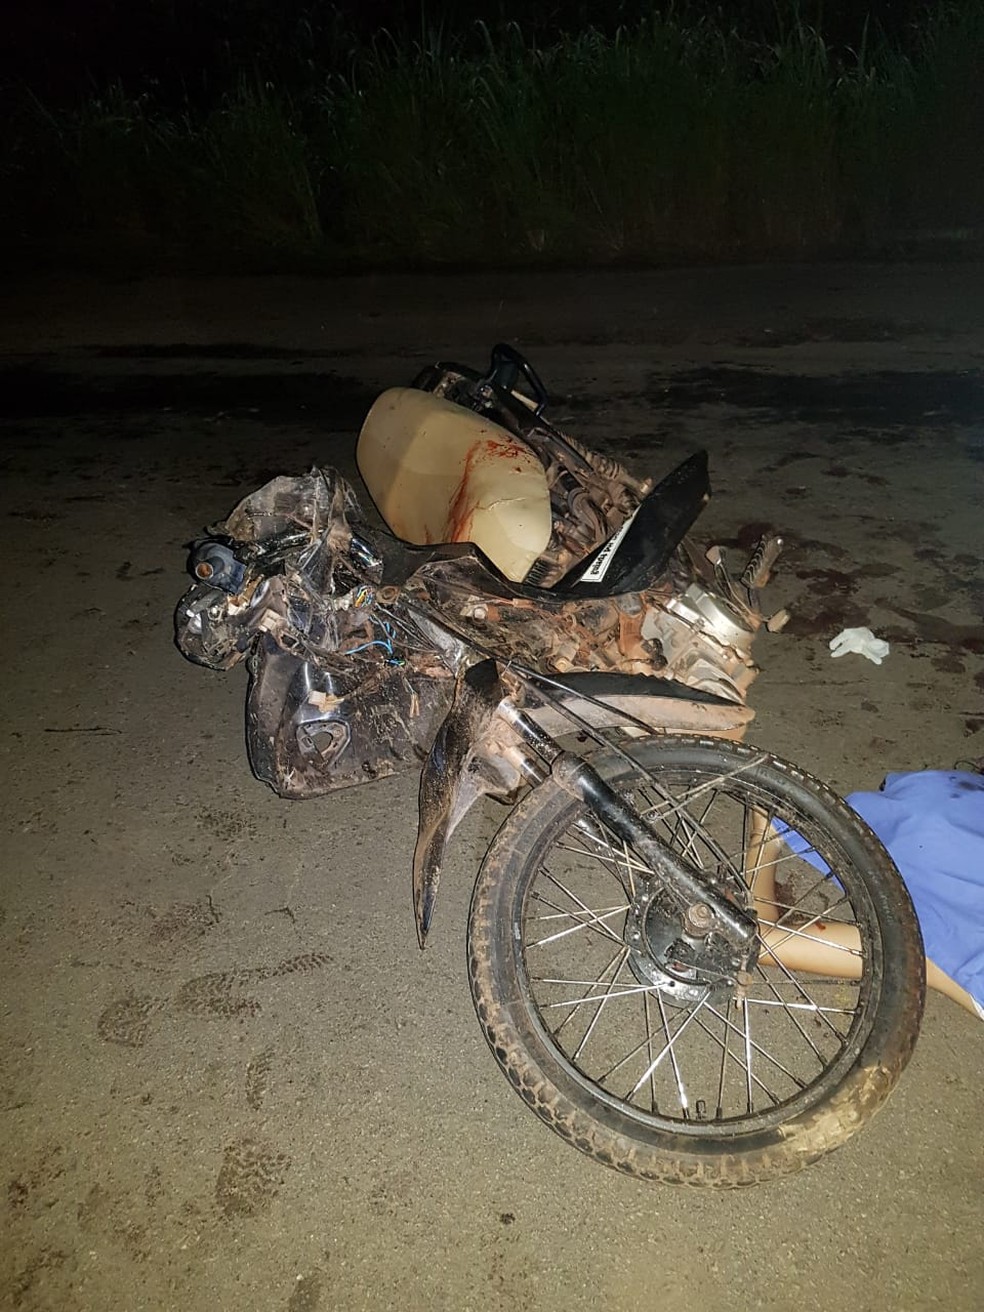 Motocicleta onde estavam as três vítimas ficou completamente destruída após o acidente na BR-316 em Peritoró — Foto: Divulgação/Polícia Rodoviária Federal